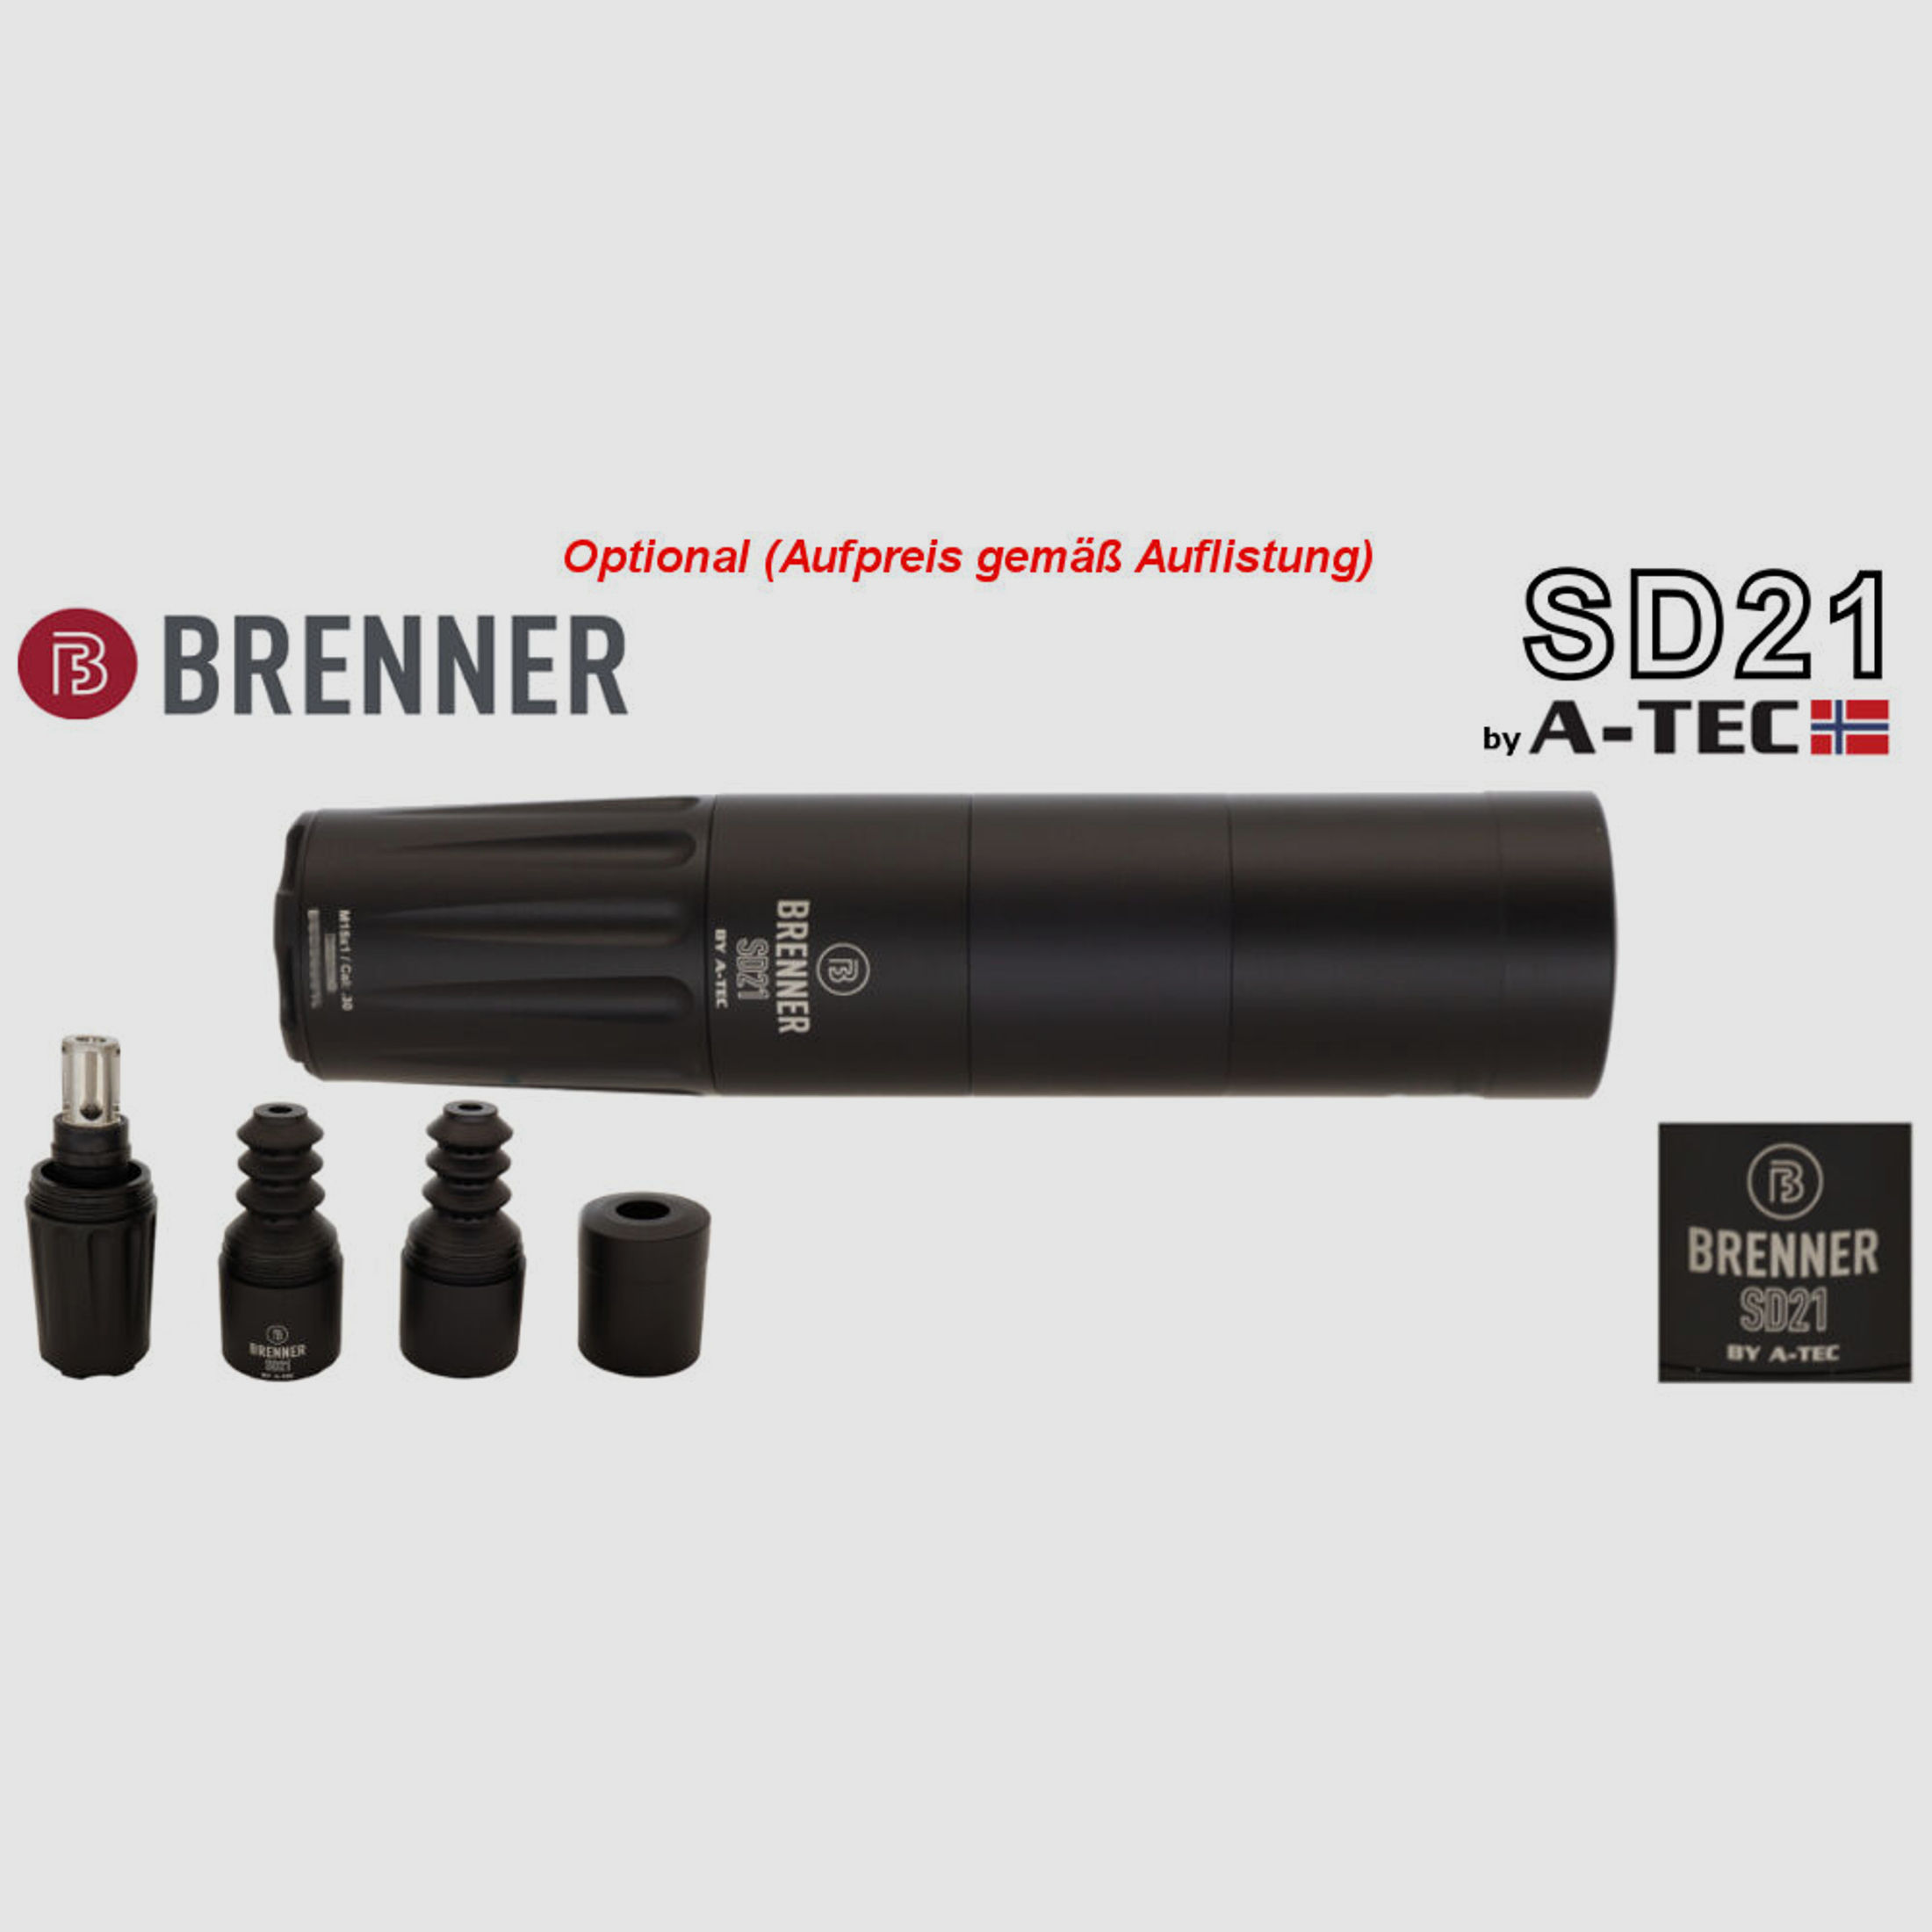 Bergara	 B14 B&H Prohunter LINKS Lochschaft Hawke 3-12x56 fertig montiert / Optional: Brenner Schalldämpfer